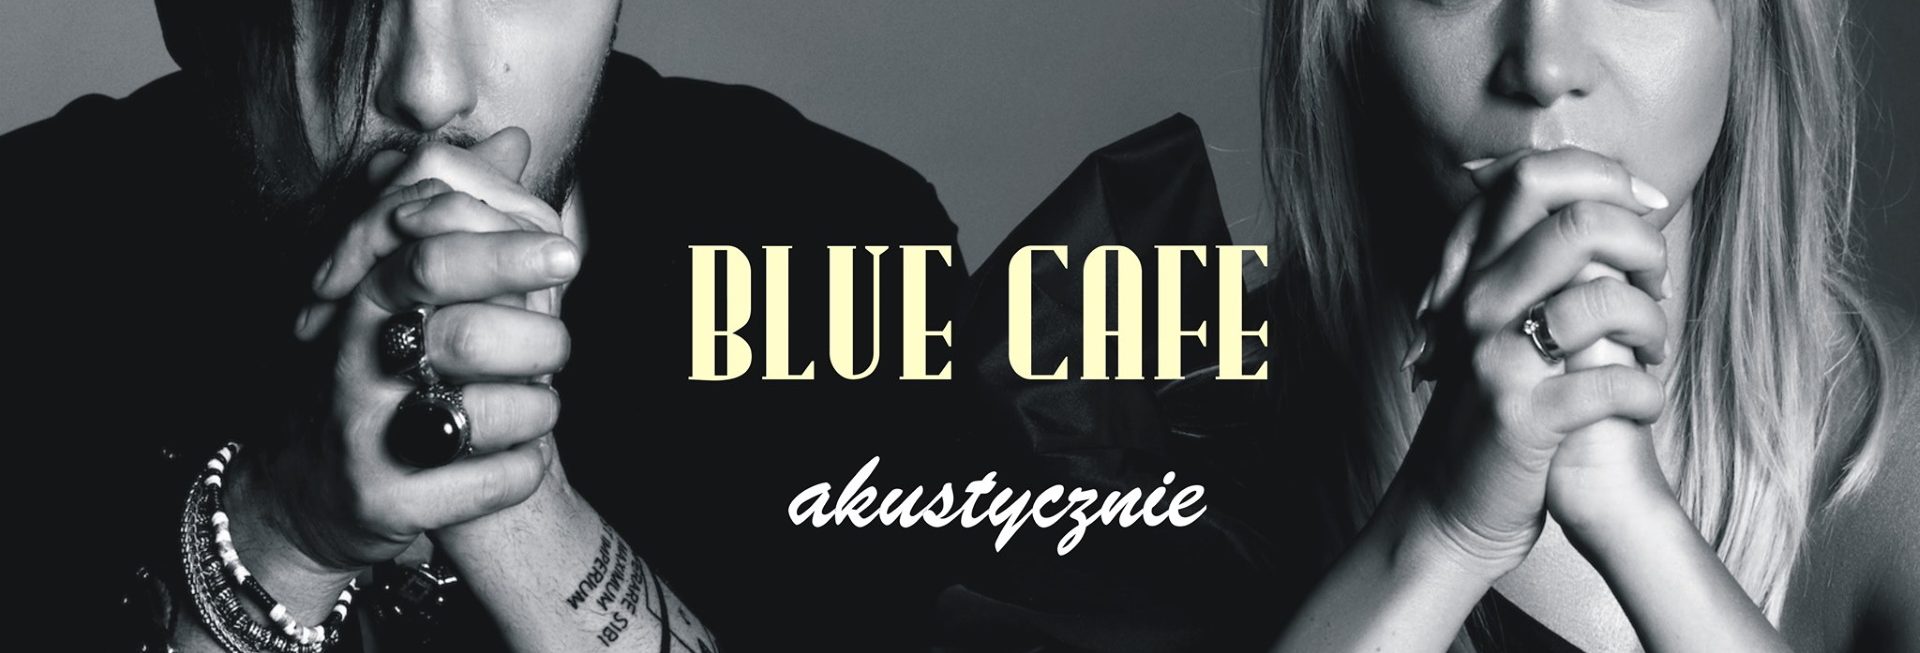 Plakat graficzny zapraszający do Wilkas na koncert zespołu Blue Cafe akustycznie - Piękna Góra / Wilkasy 2021.